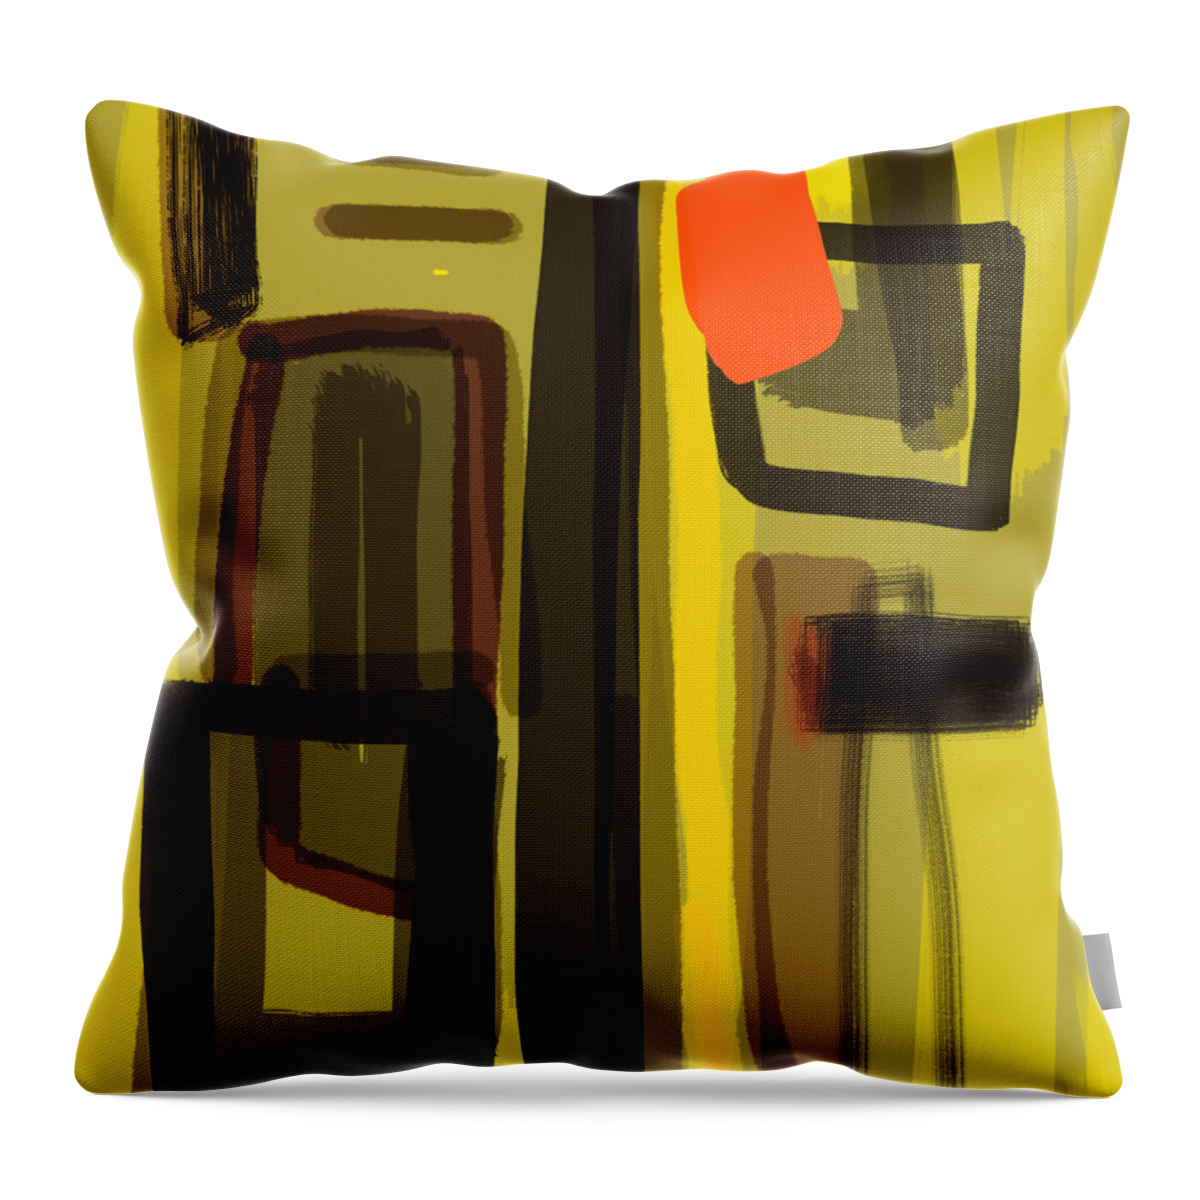 Win Throw Pillow featuring the digital art The Win Bar by Susan Fielder